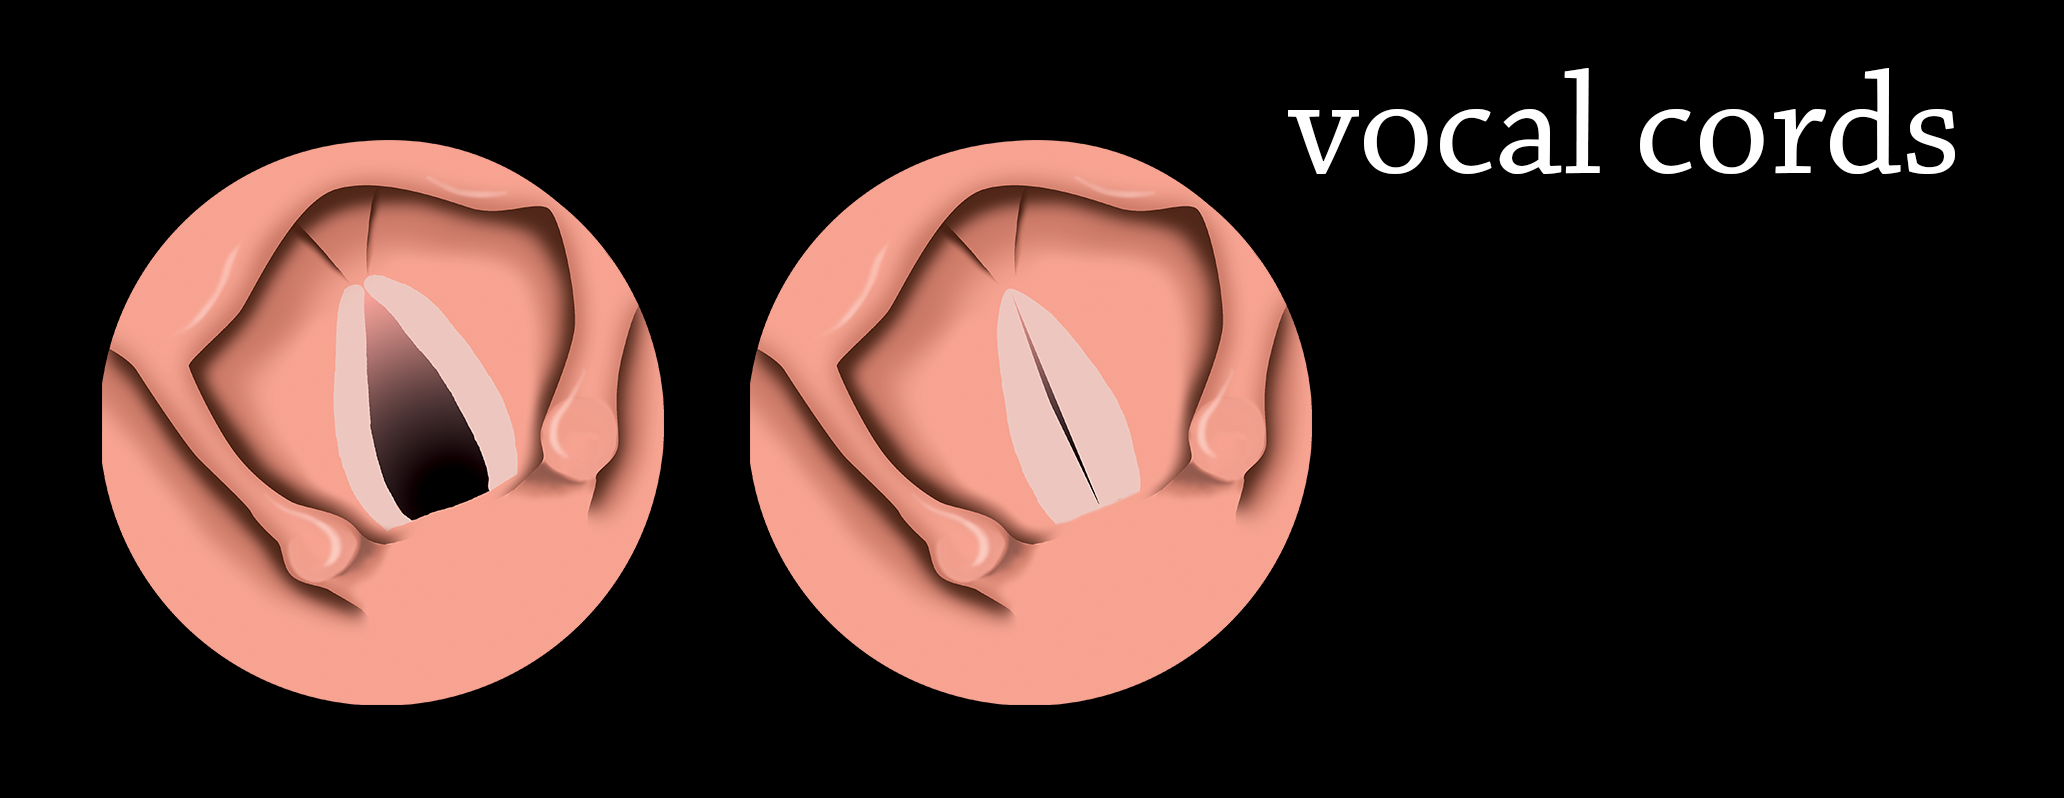 illustrazione 2D a mano libera: apertura e chiusura delle corde vocali. Vista cranio-caudale